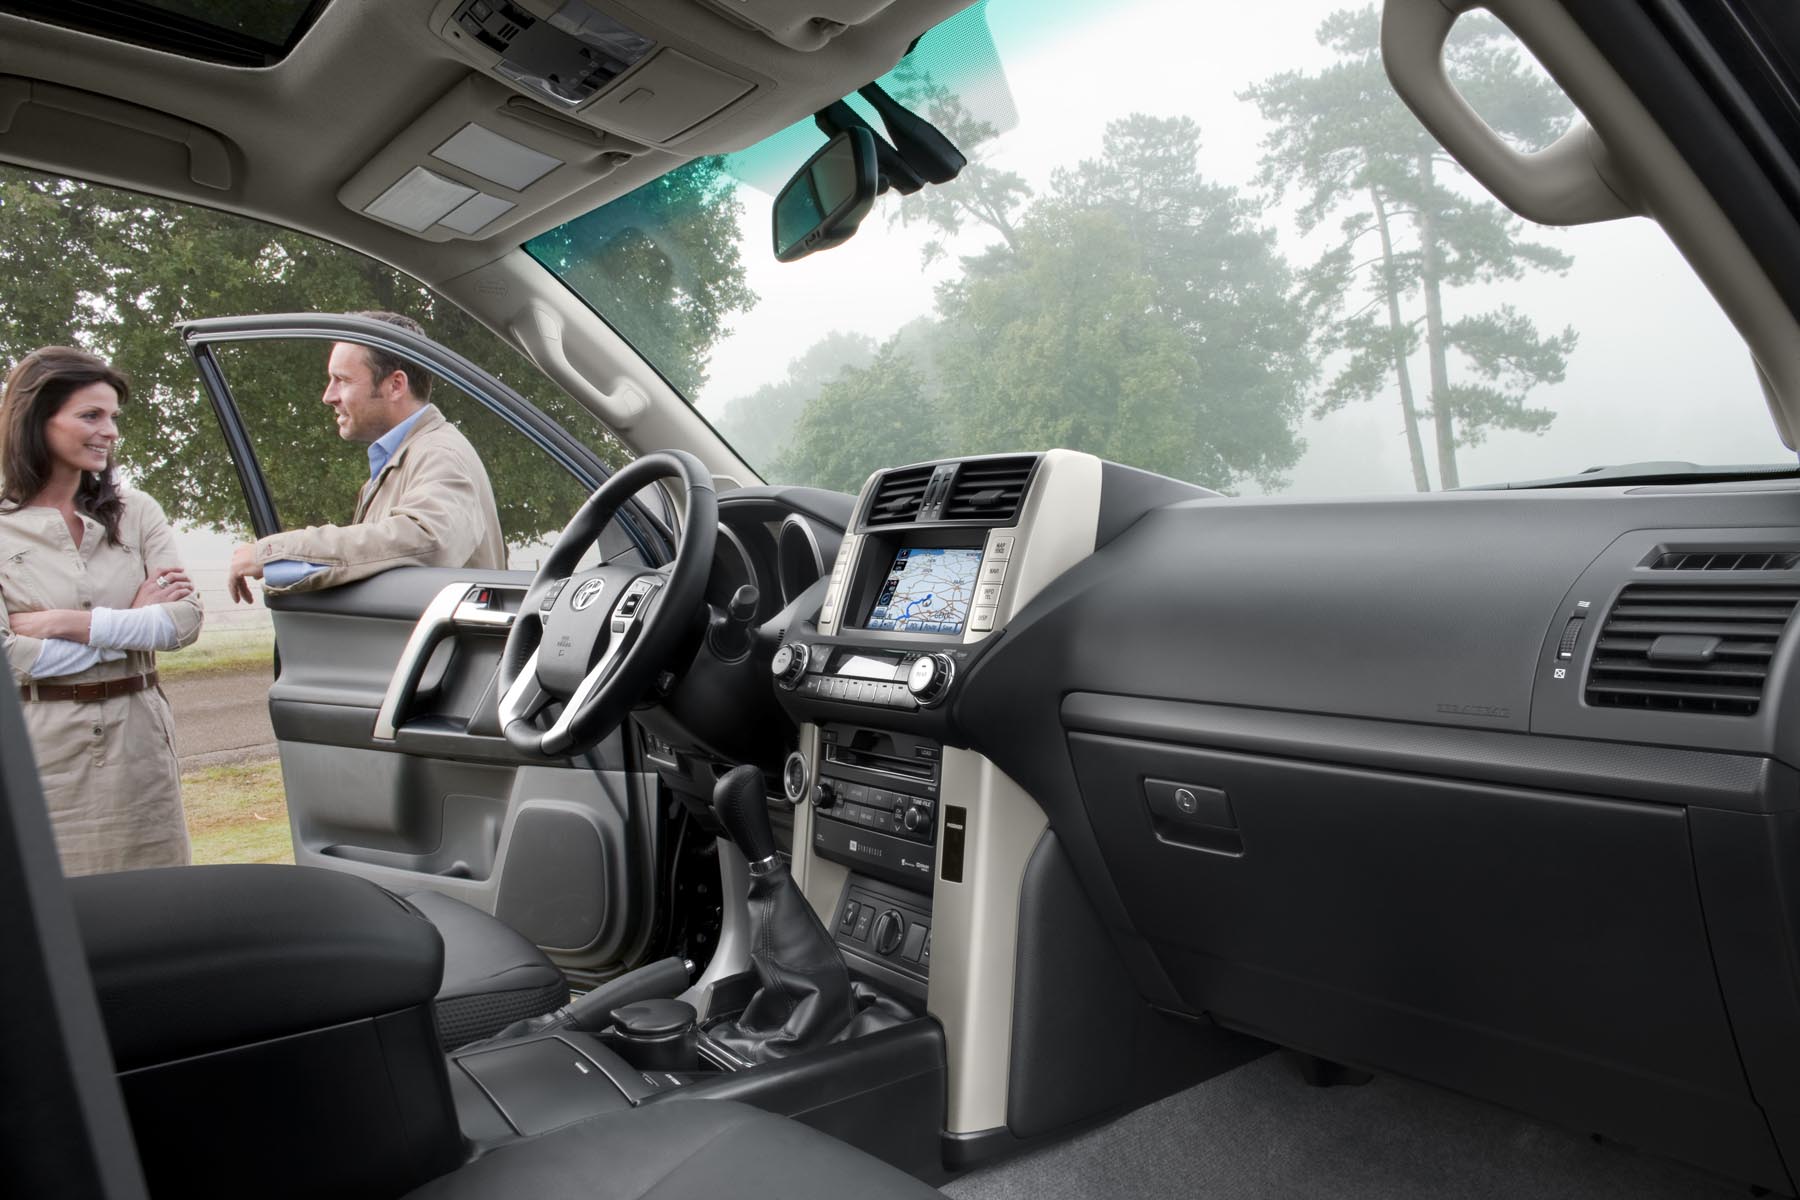 Noua Toyota Land Cruiser 150 are un interior foarte spatios, mult mai luxos si cu multe dotari de confort